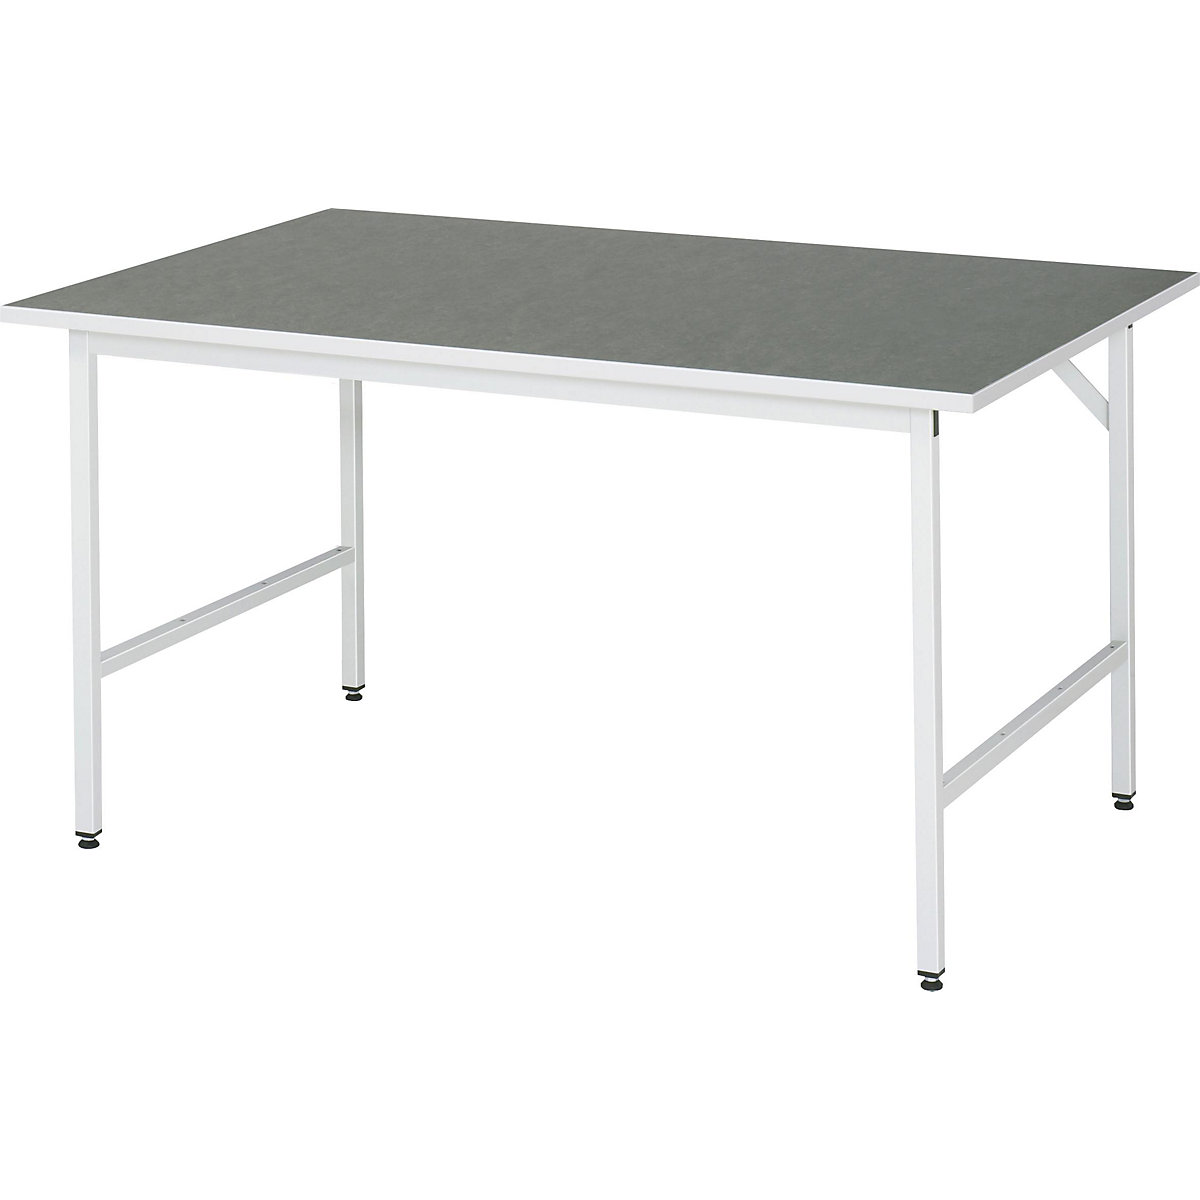 Munkaasztal, állítható magasságú – RAU, 800 – 850 mm, linóleum lap, szé x mé 1500 x 1000 mm, világosszürke-7